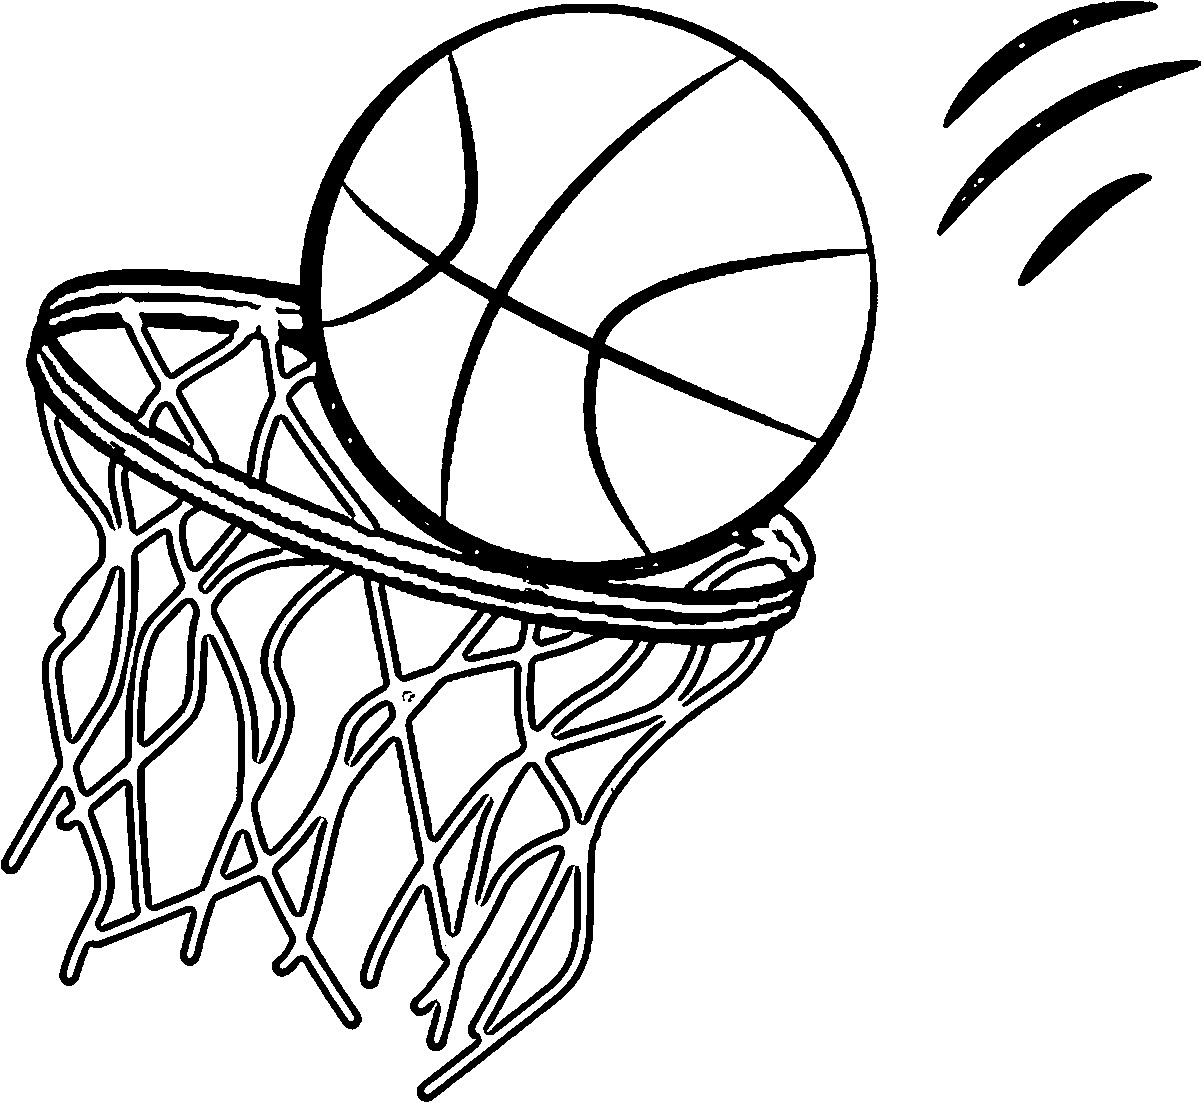 Printable Basketball Coloring Pages
 Basketball Coloring Pages Printable Coloring Home